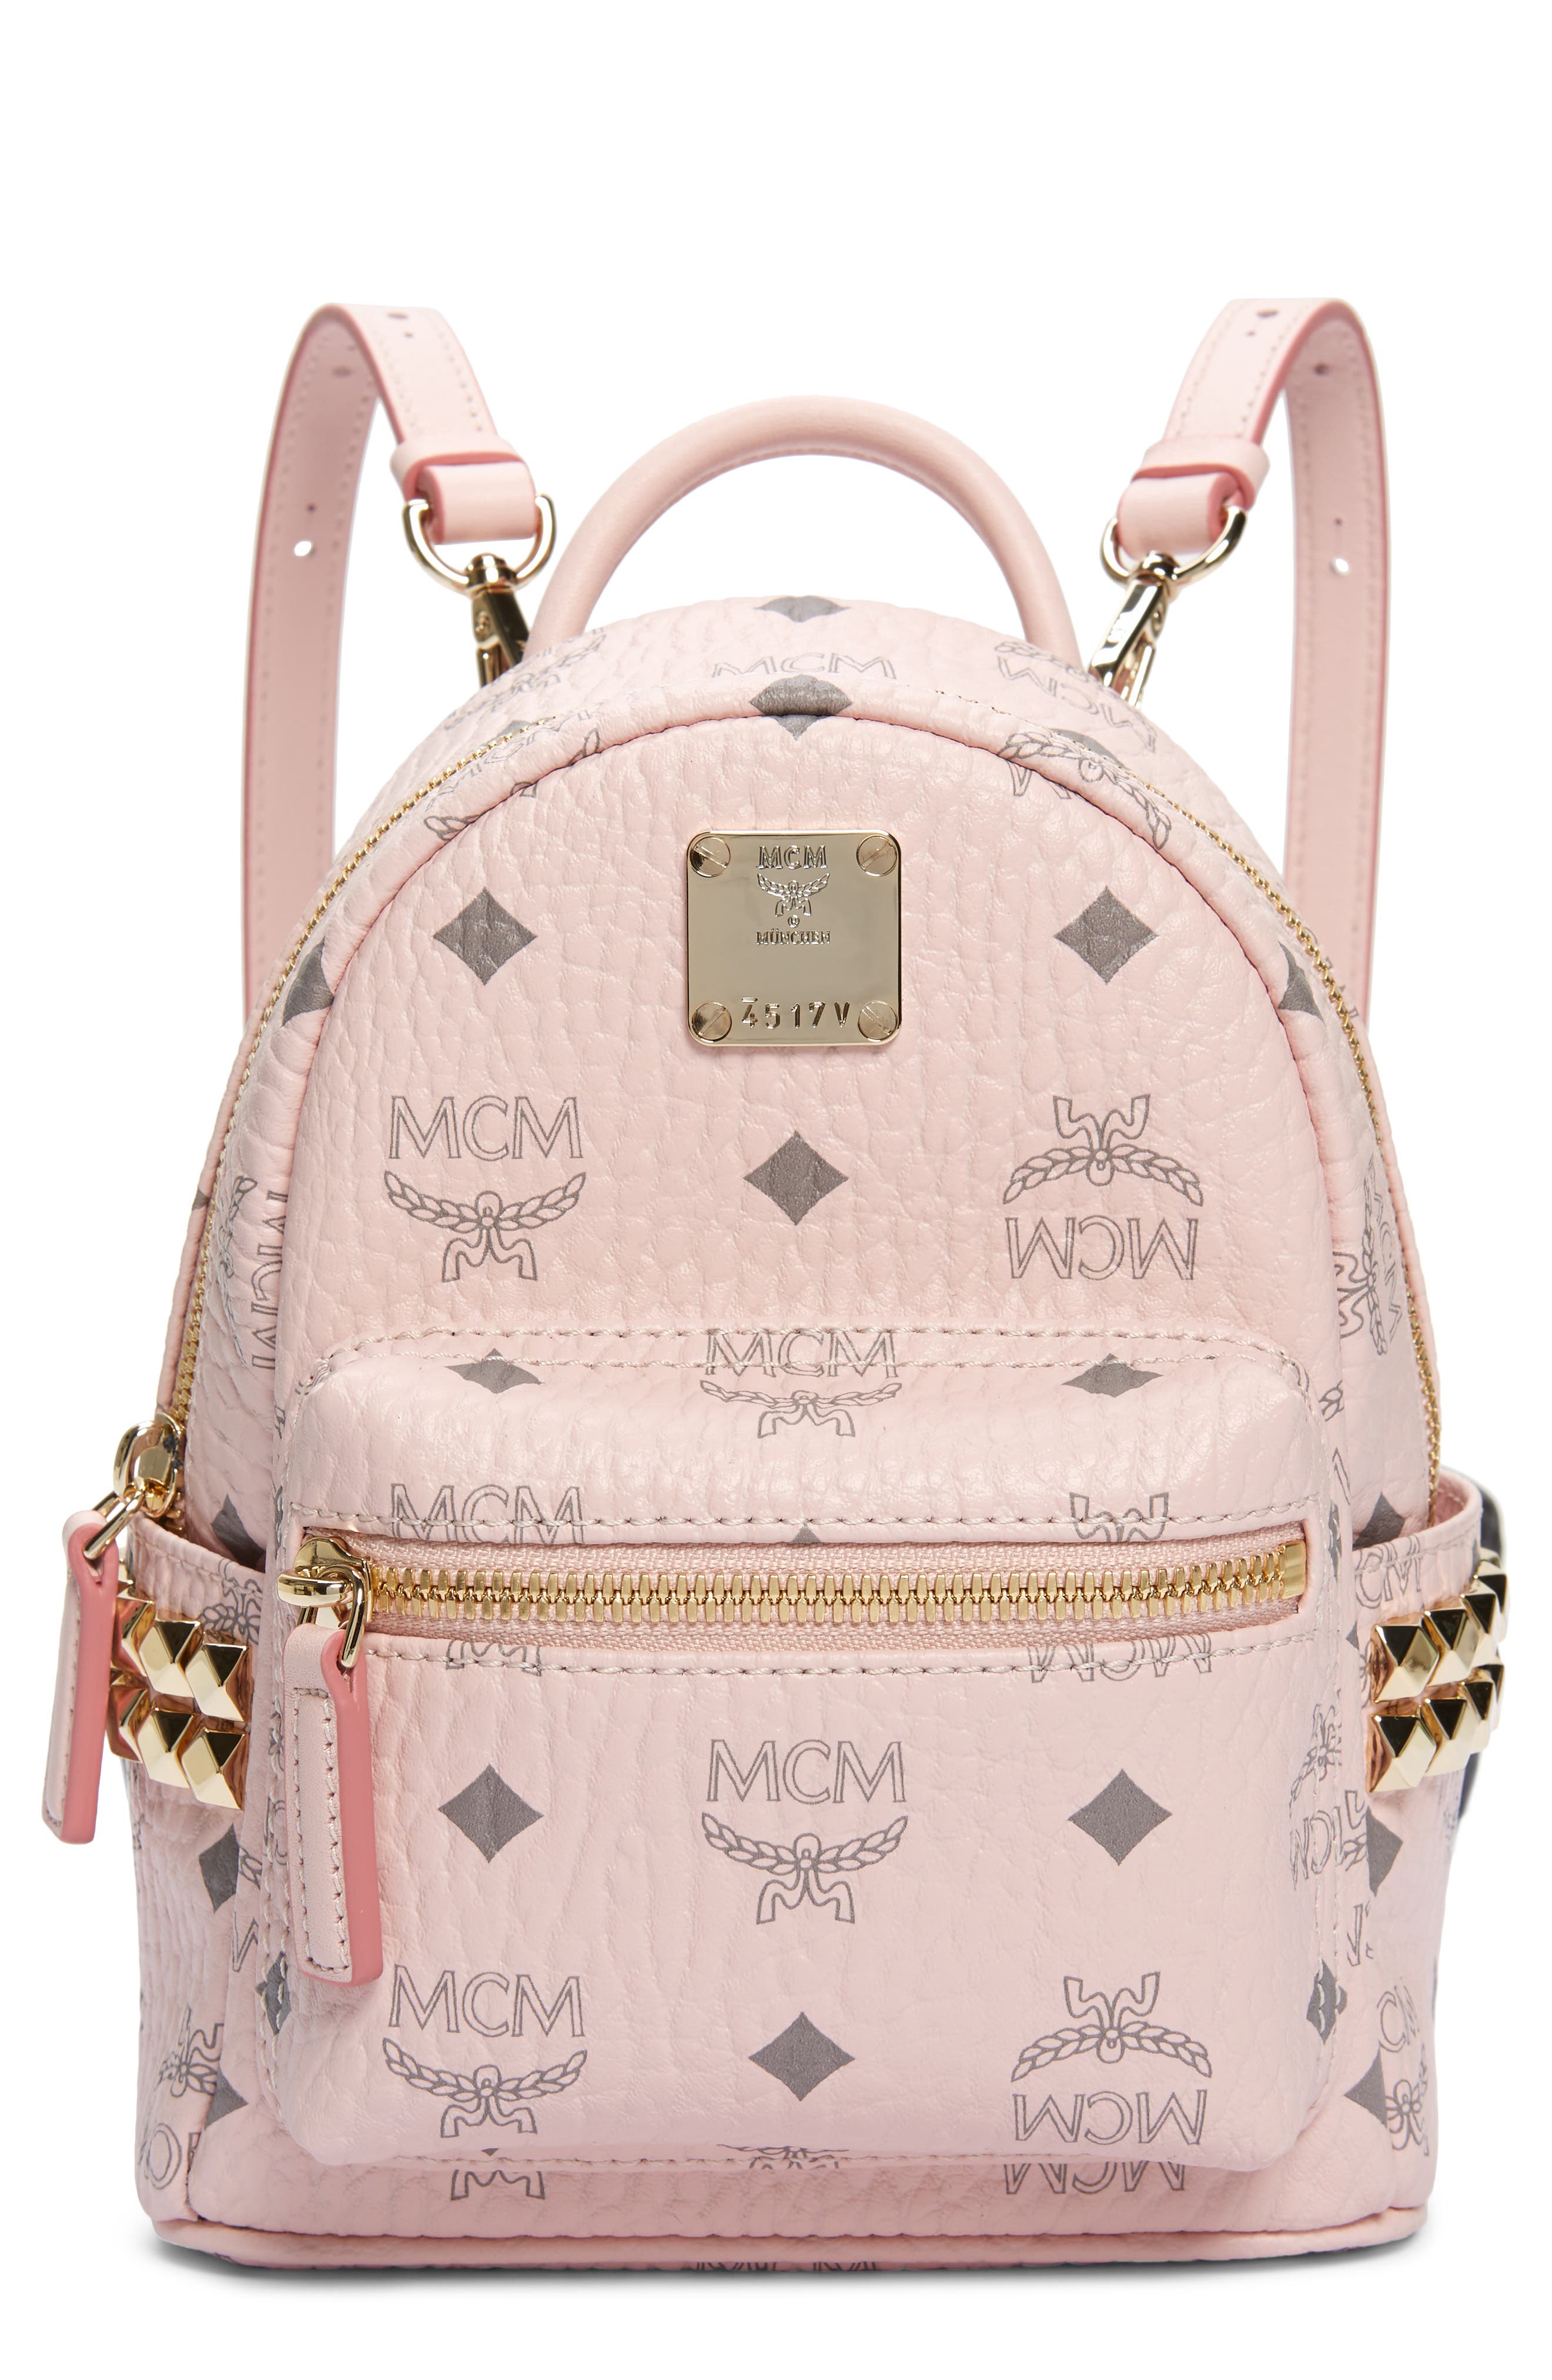 mcm ladies backpack